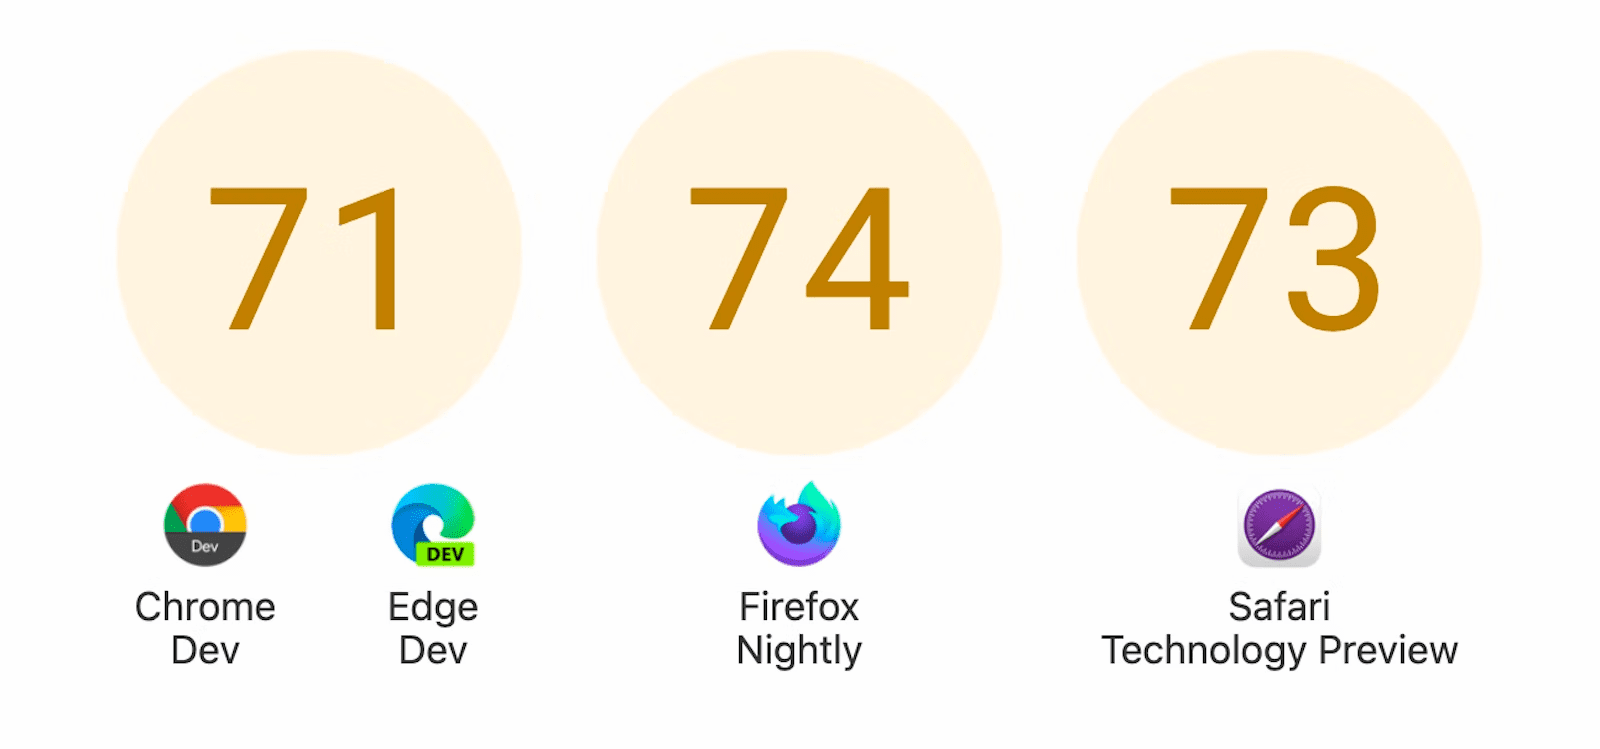 スコア付きの 3 つの円を表示しています: Chrome Dev と Edge Dev は 71、Firefox Nightly は 74、Safari Technology Preview は 73 です。